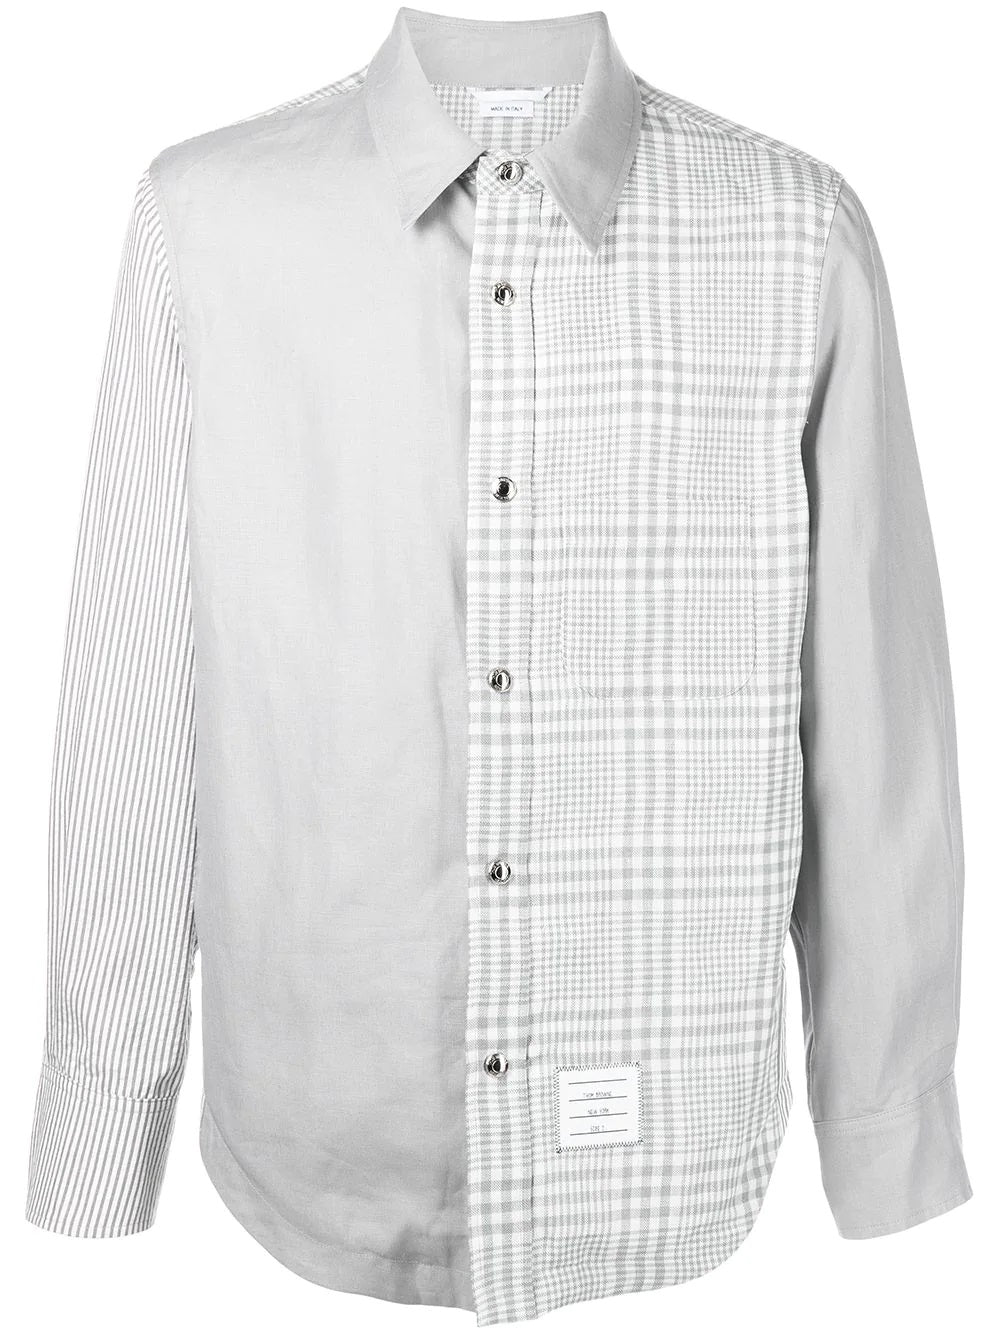 panelled line shirt - SHEET-1